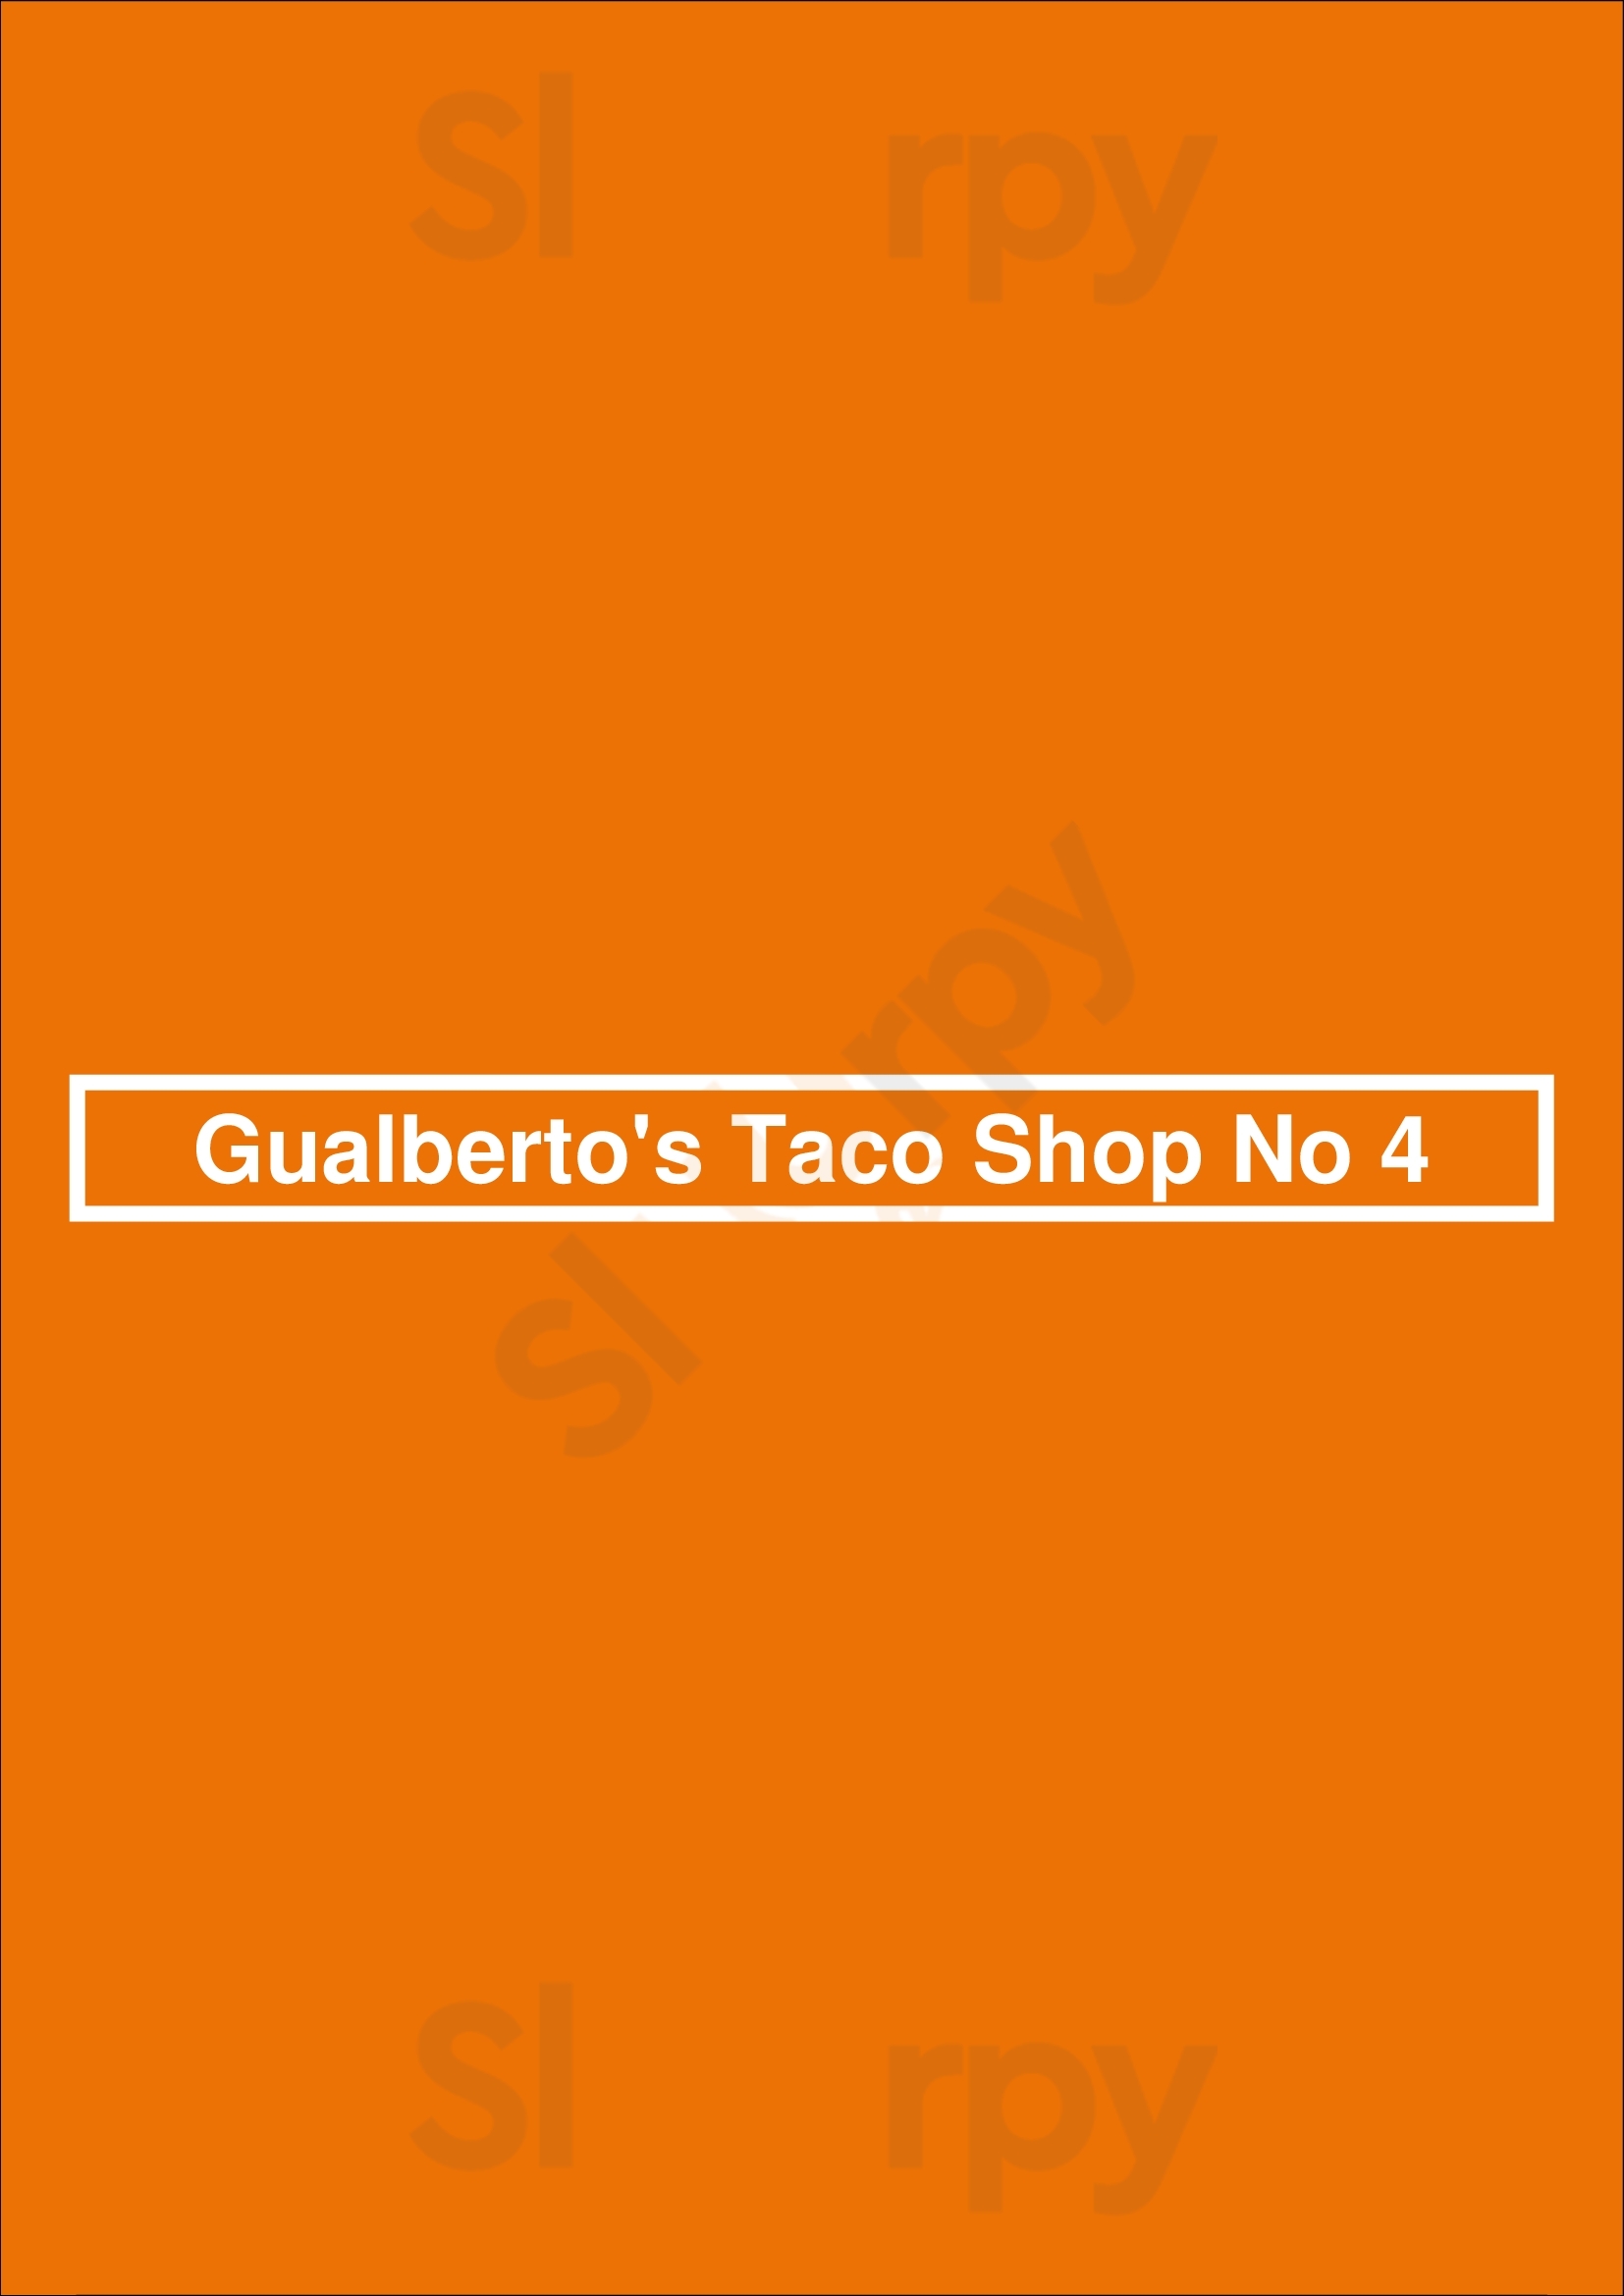 Gualberto's Taco Shop No 4 La Jolla Menu - 1